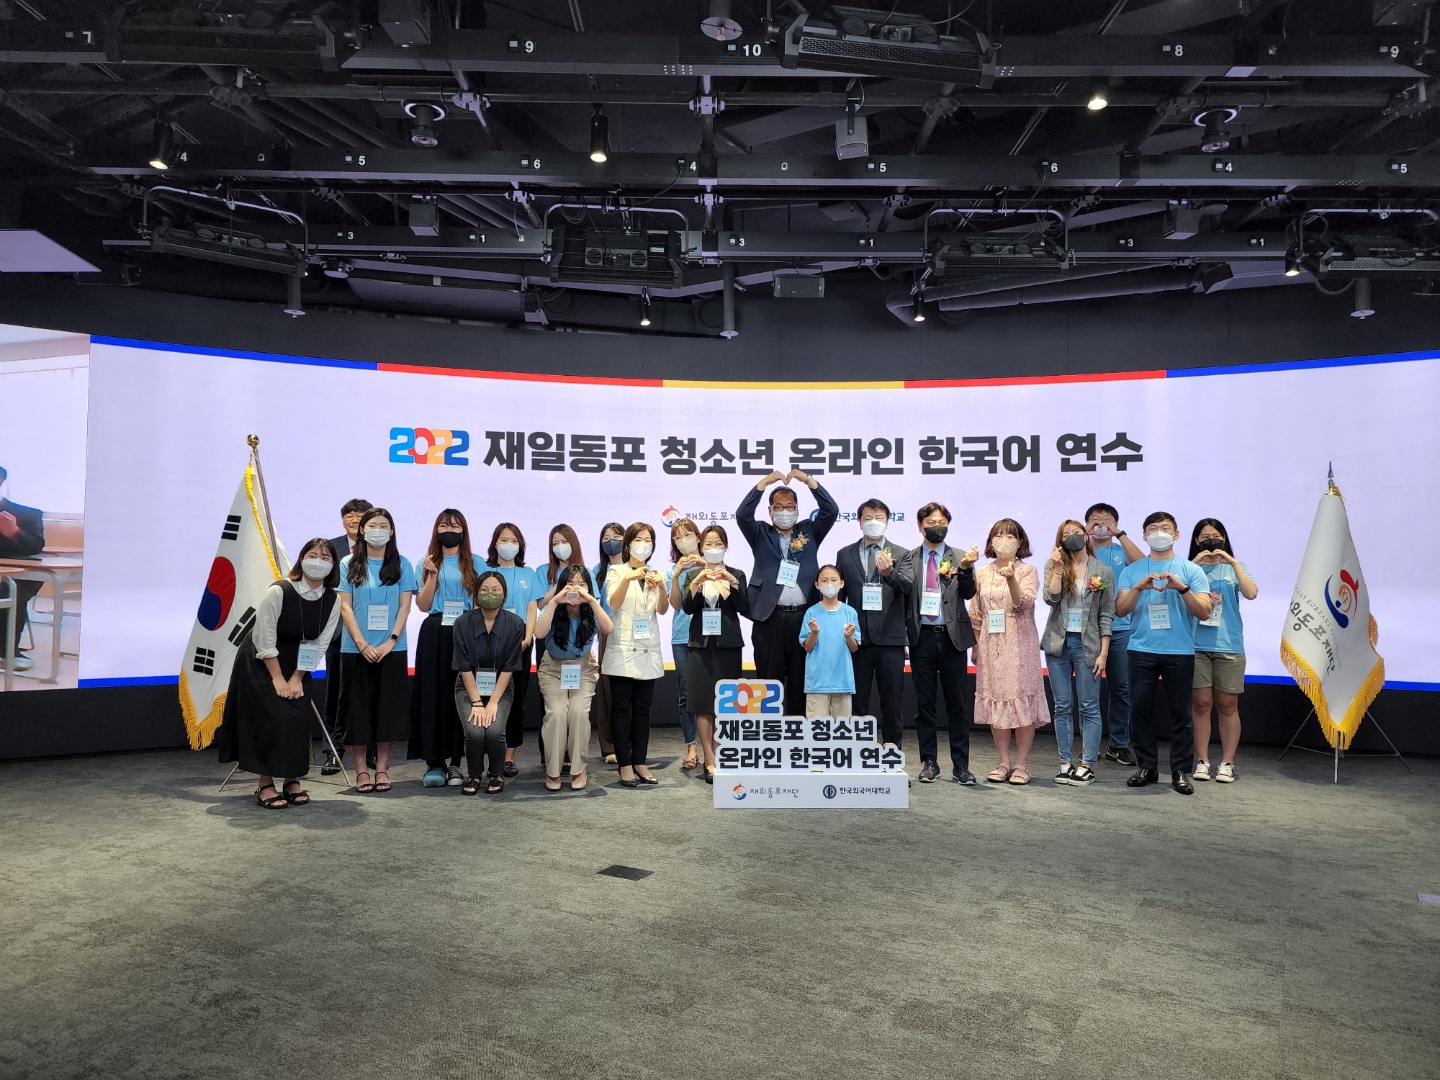 [사진자료]'2022 재일동포 청소년 온라인 한국어 연수 폐회식